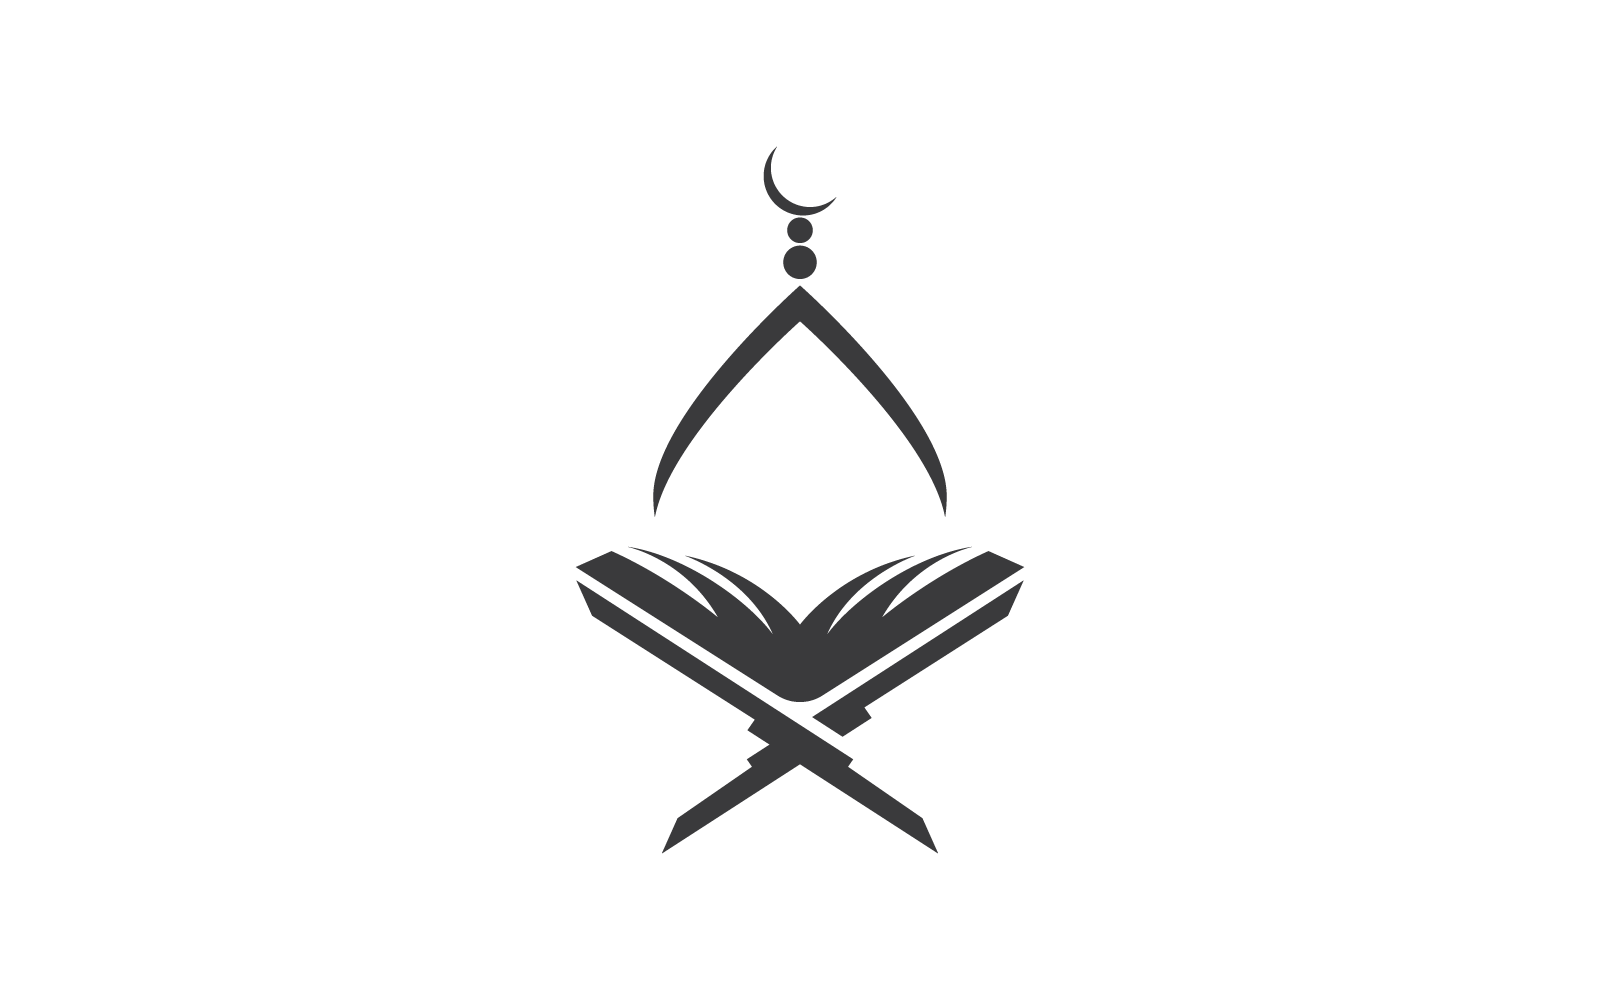 Koran or Quran Islamic logo and symbol vector design